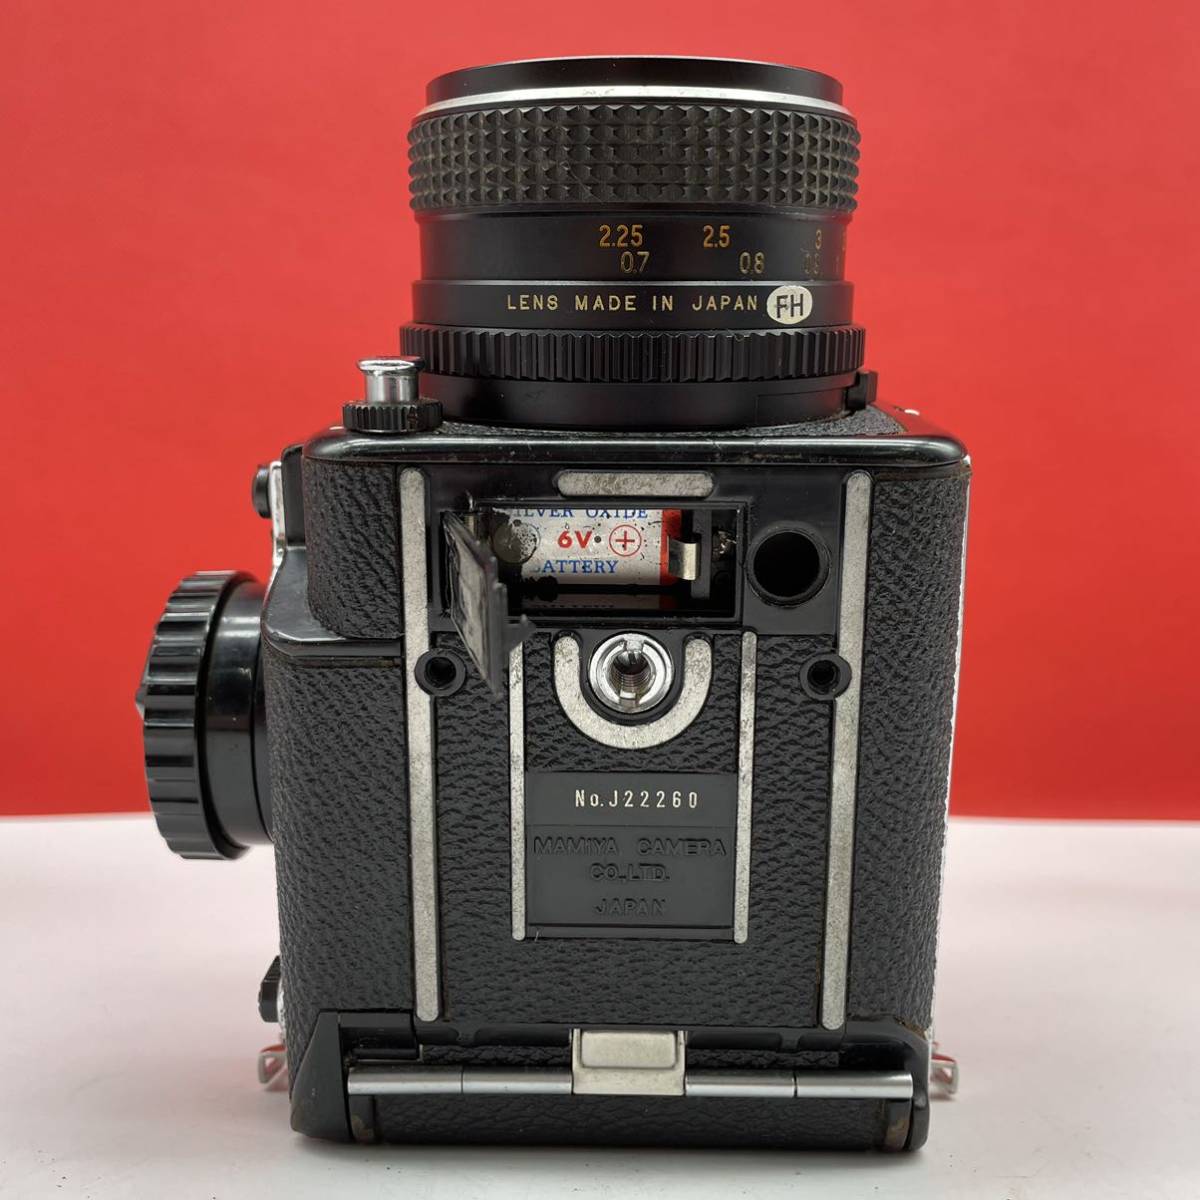 魅力的な MAMIYA M645 SEKOR 80mm f2.8 中判カメラ フィルムカメラ